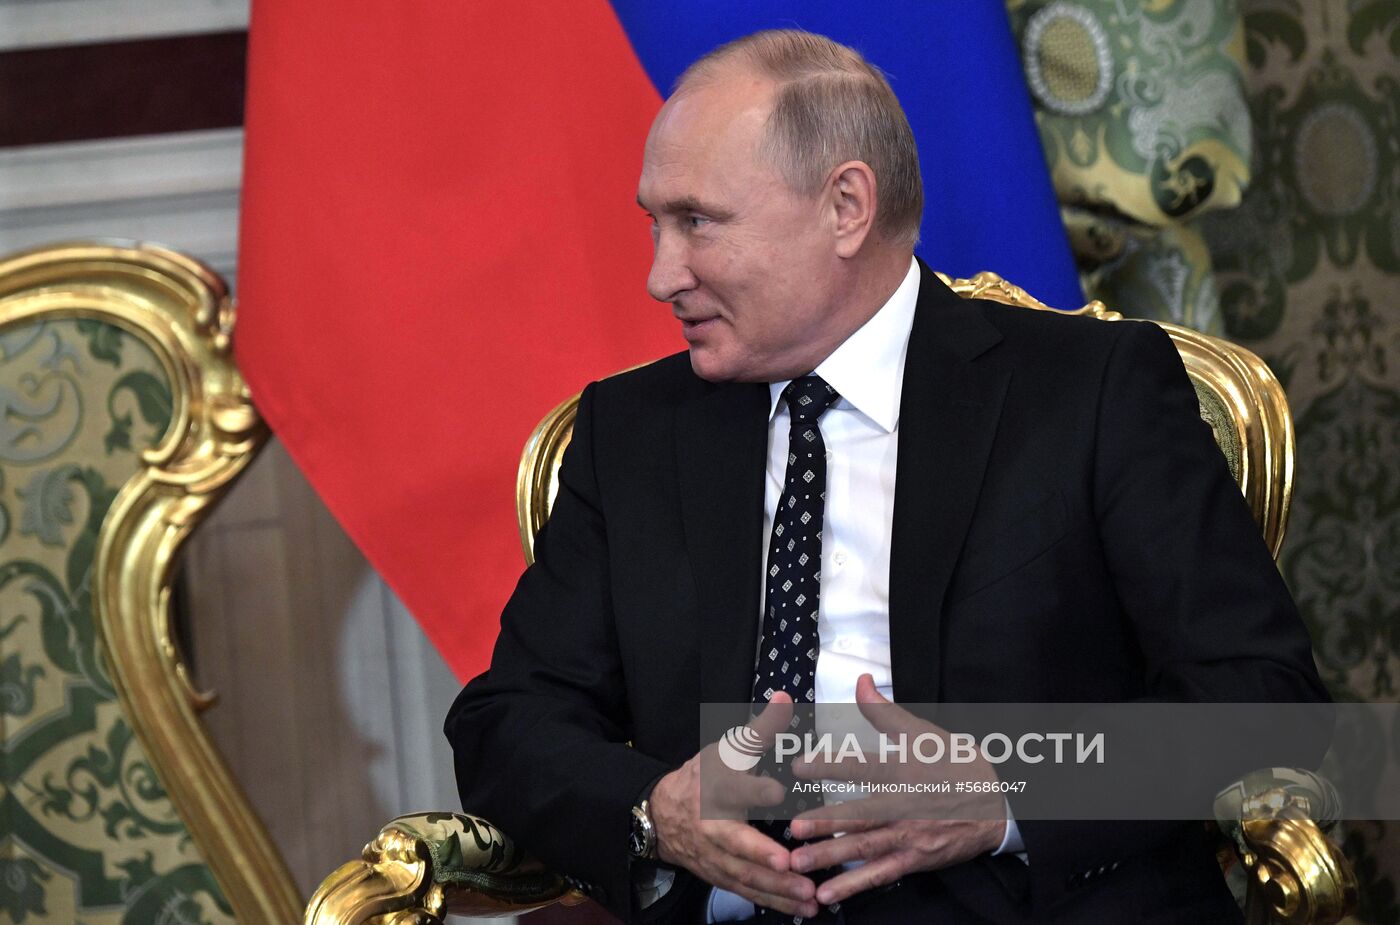   Президент РФ В. Путин встретился с председателем Госсовета Кубы М. Диас-Канелем Бермудесом